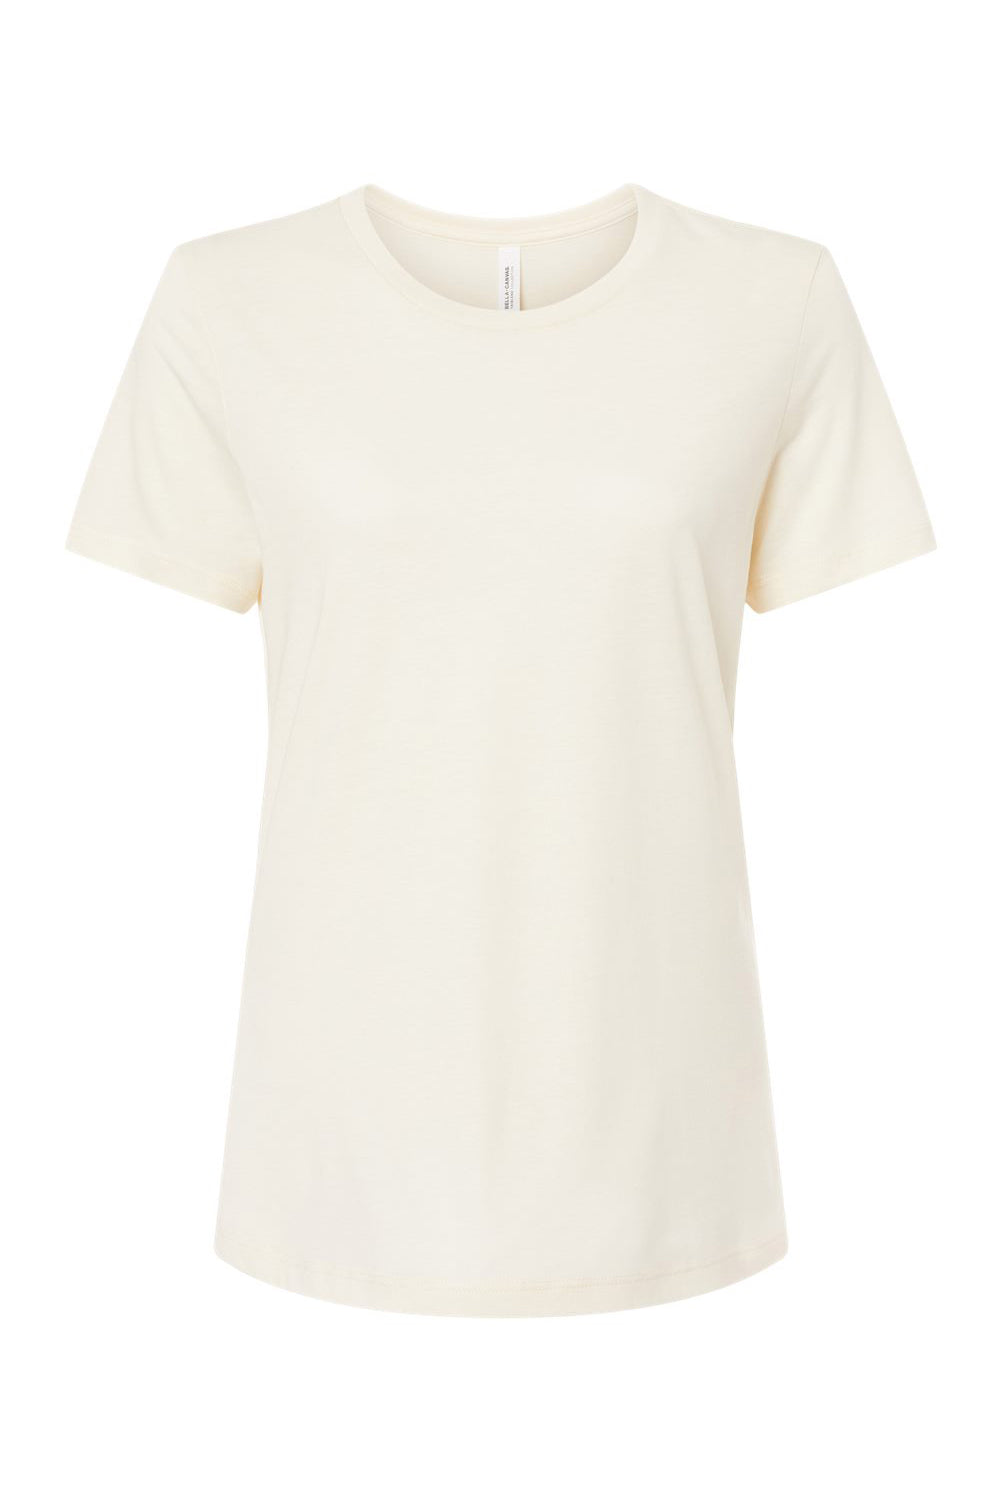 Bella + Canvas BC6413 Womens Short Sleeve Crewneck T-Shirt Natural Flat Front